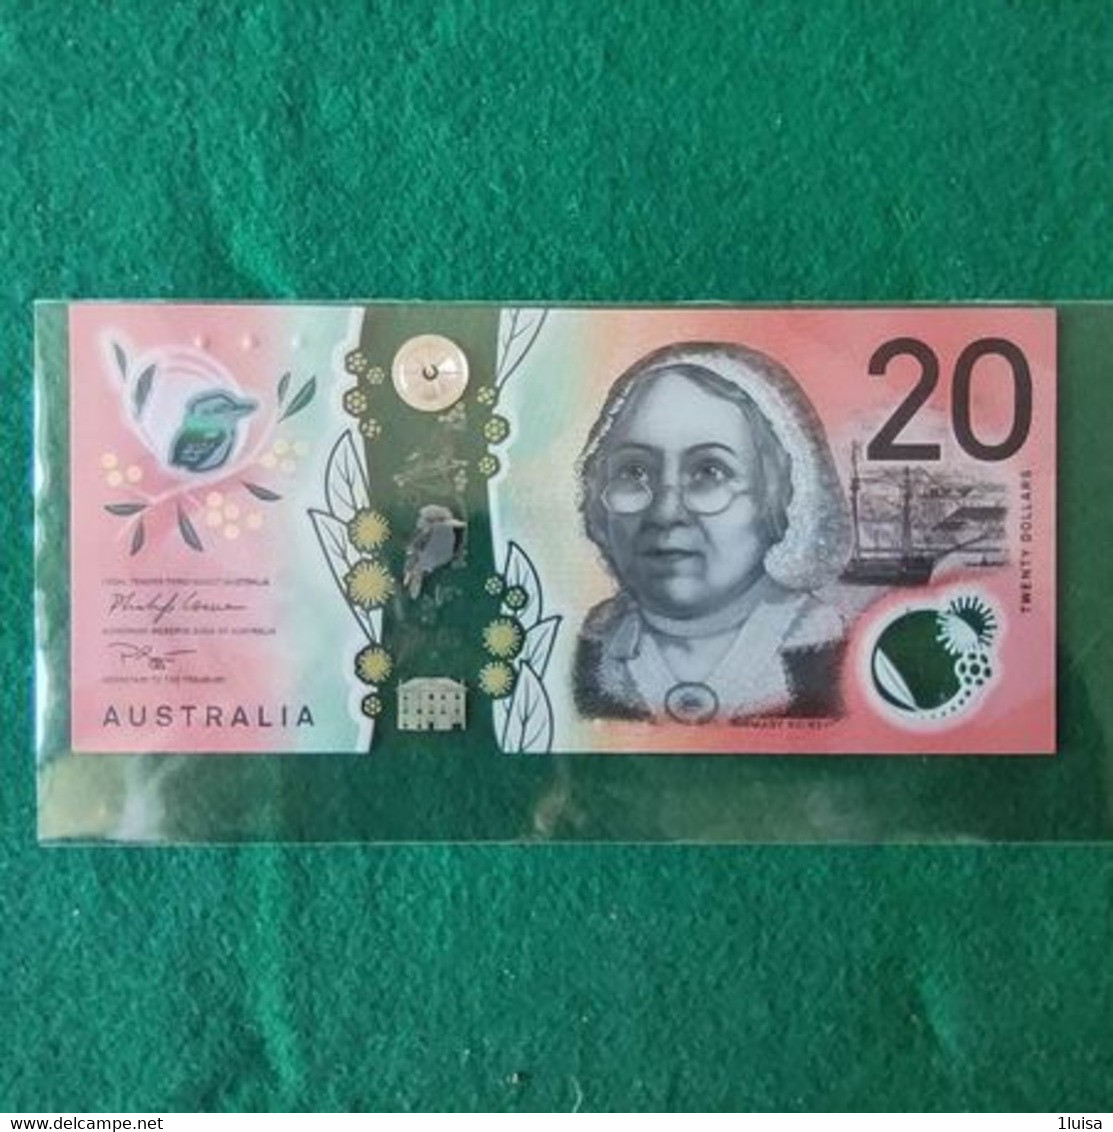 Australia 20 Dollars 2005 - 1988 (10$ Kunststoffgeldscheine)